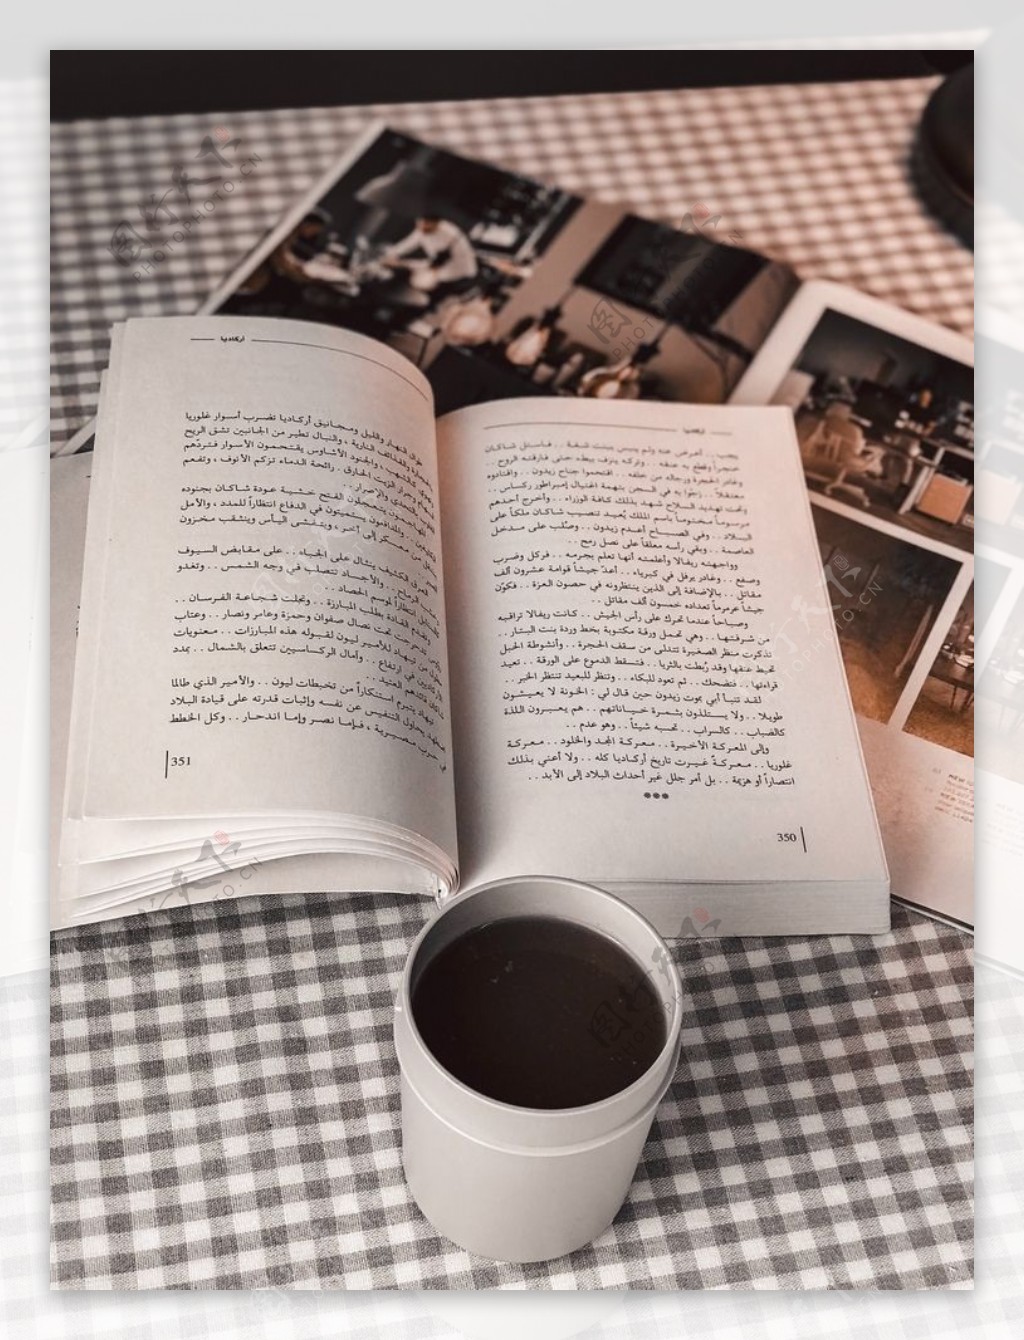 咖啡与书本